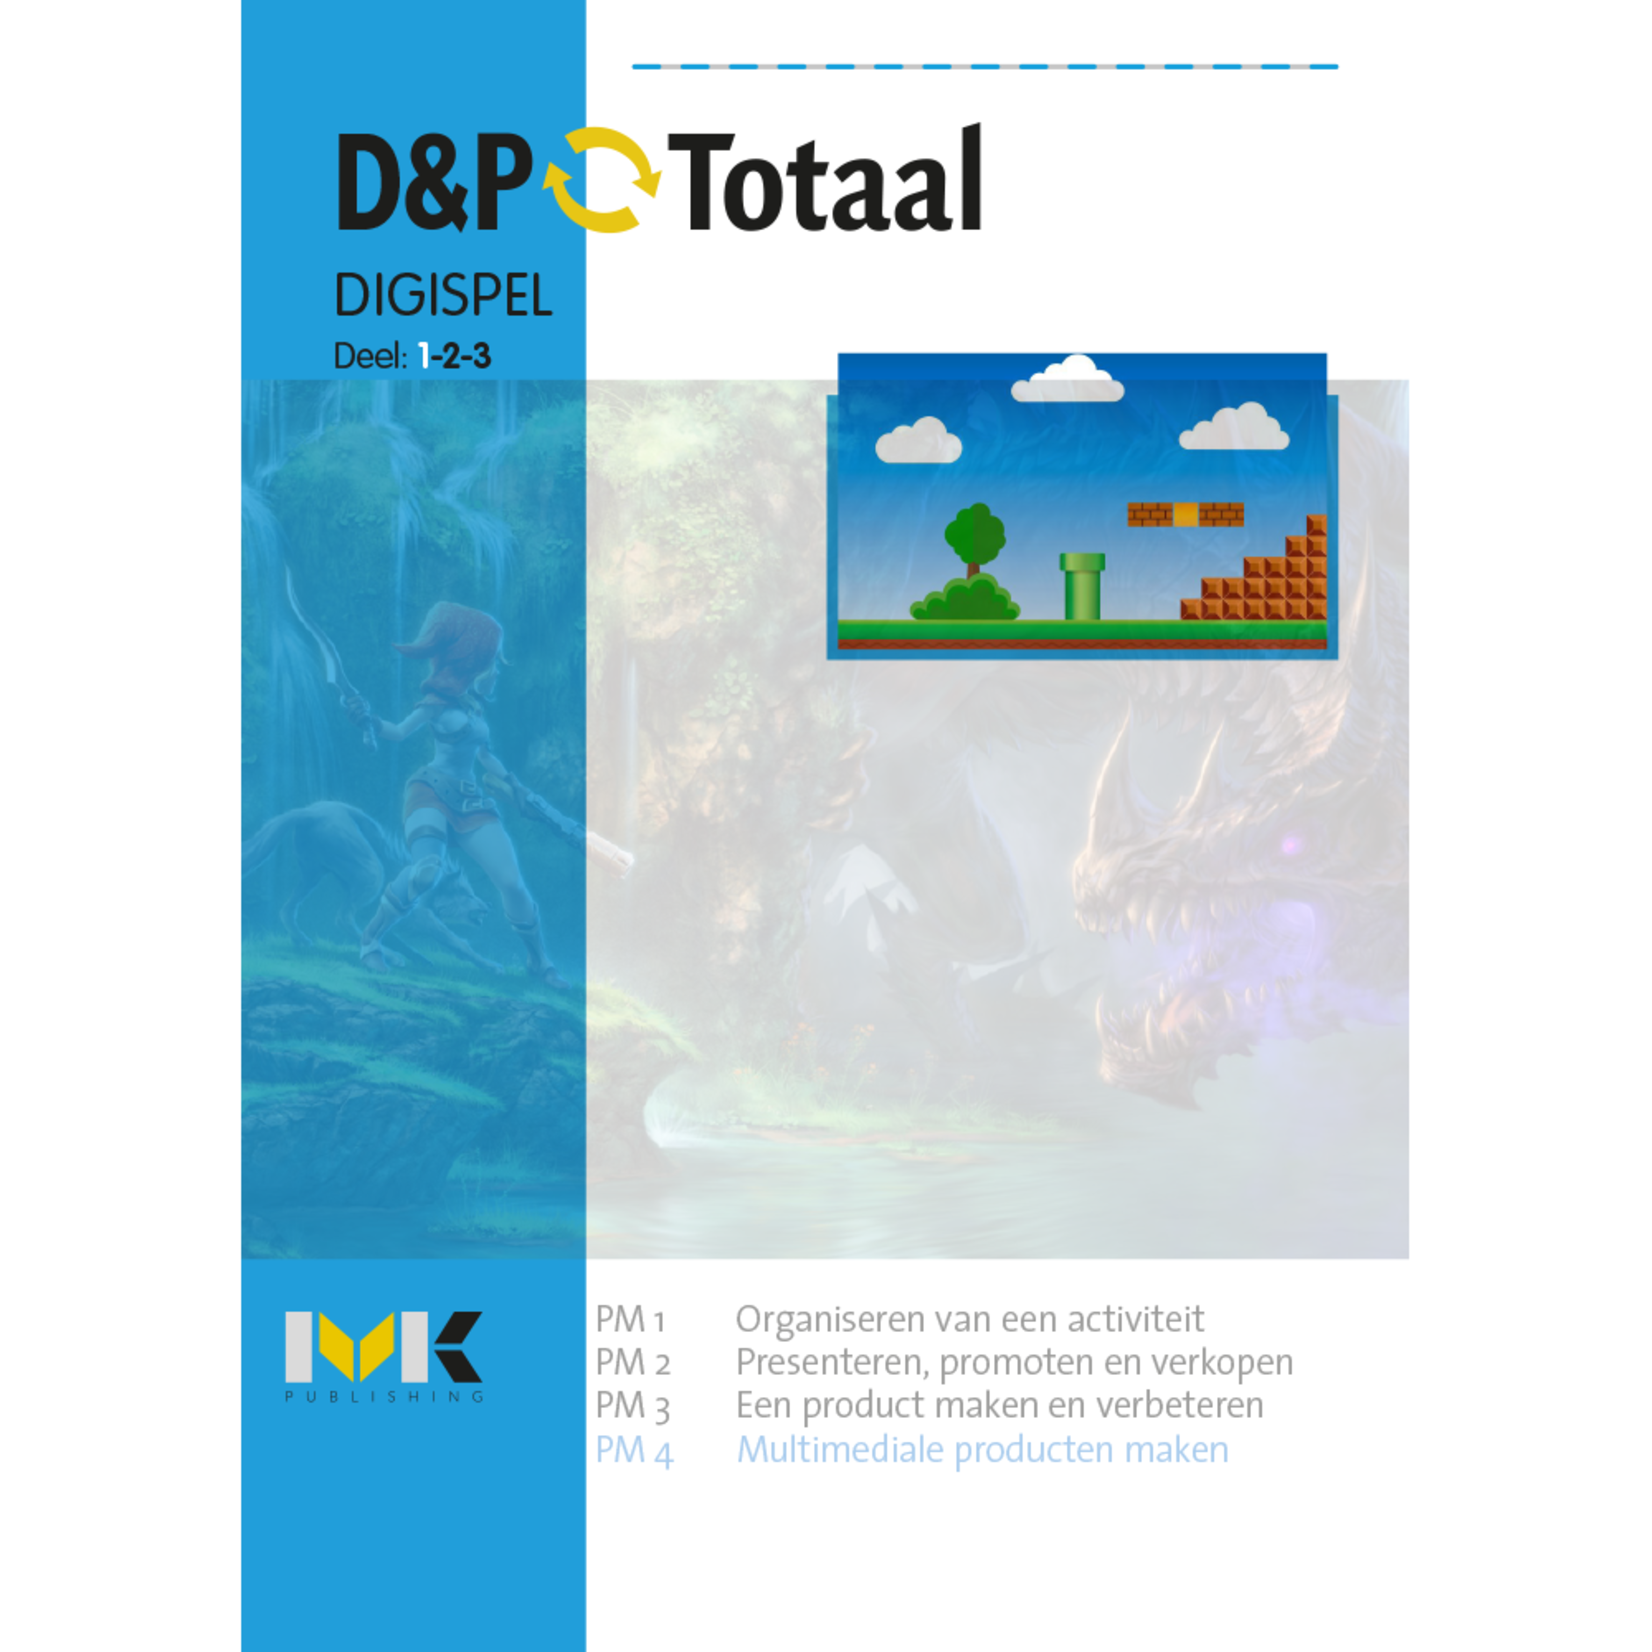 D&P-Totaal - D&P Digispel (PM4/1911)